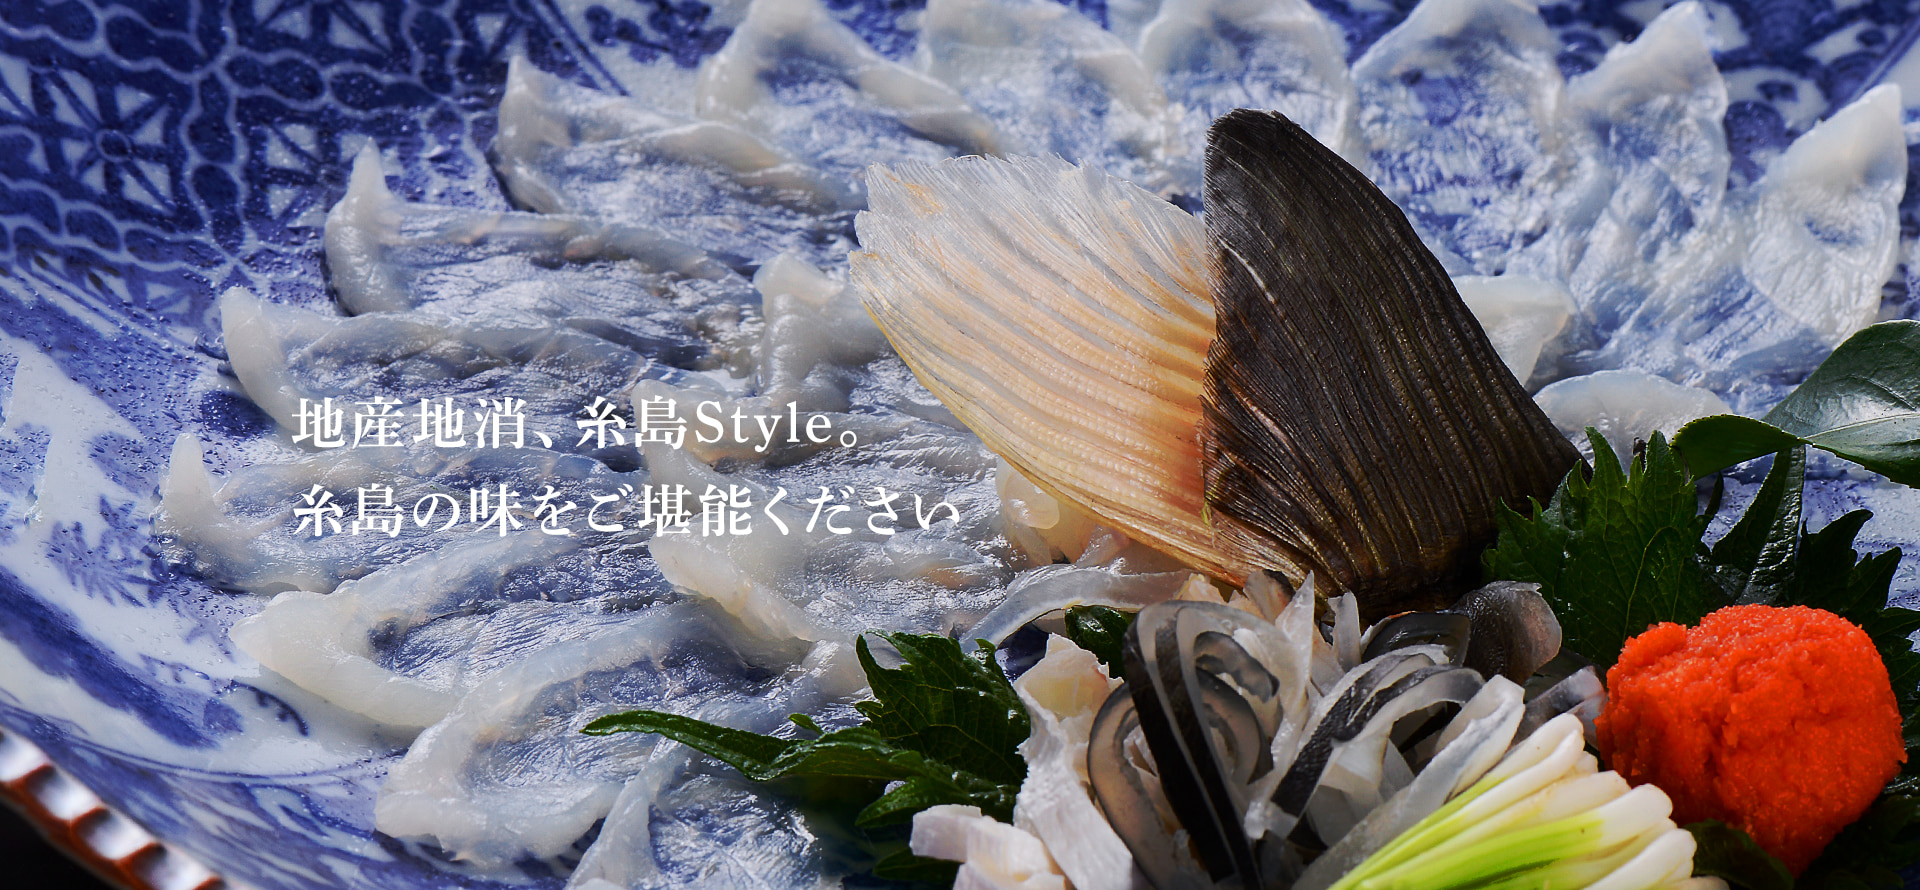 地産地消、糸島Style。糸島の味をご堪能ください。